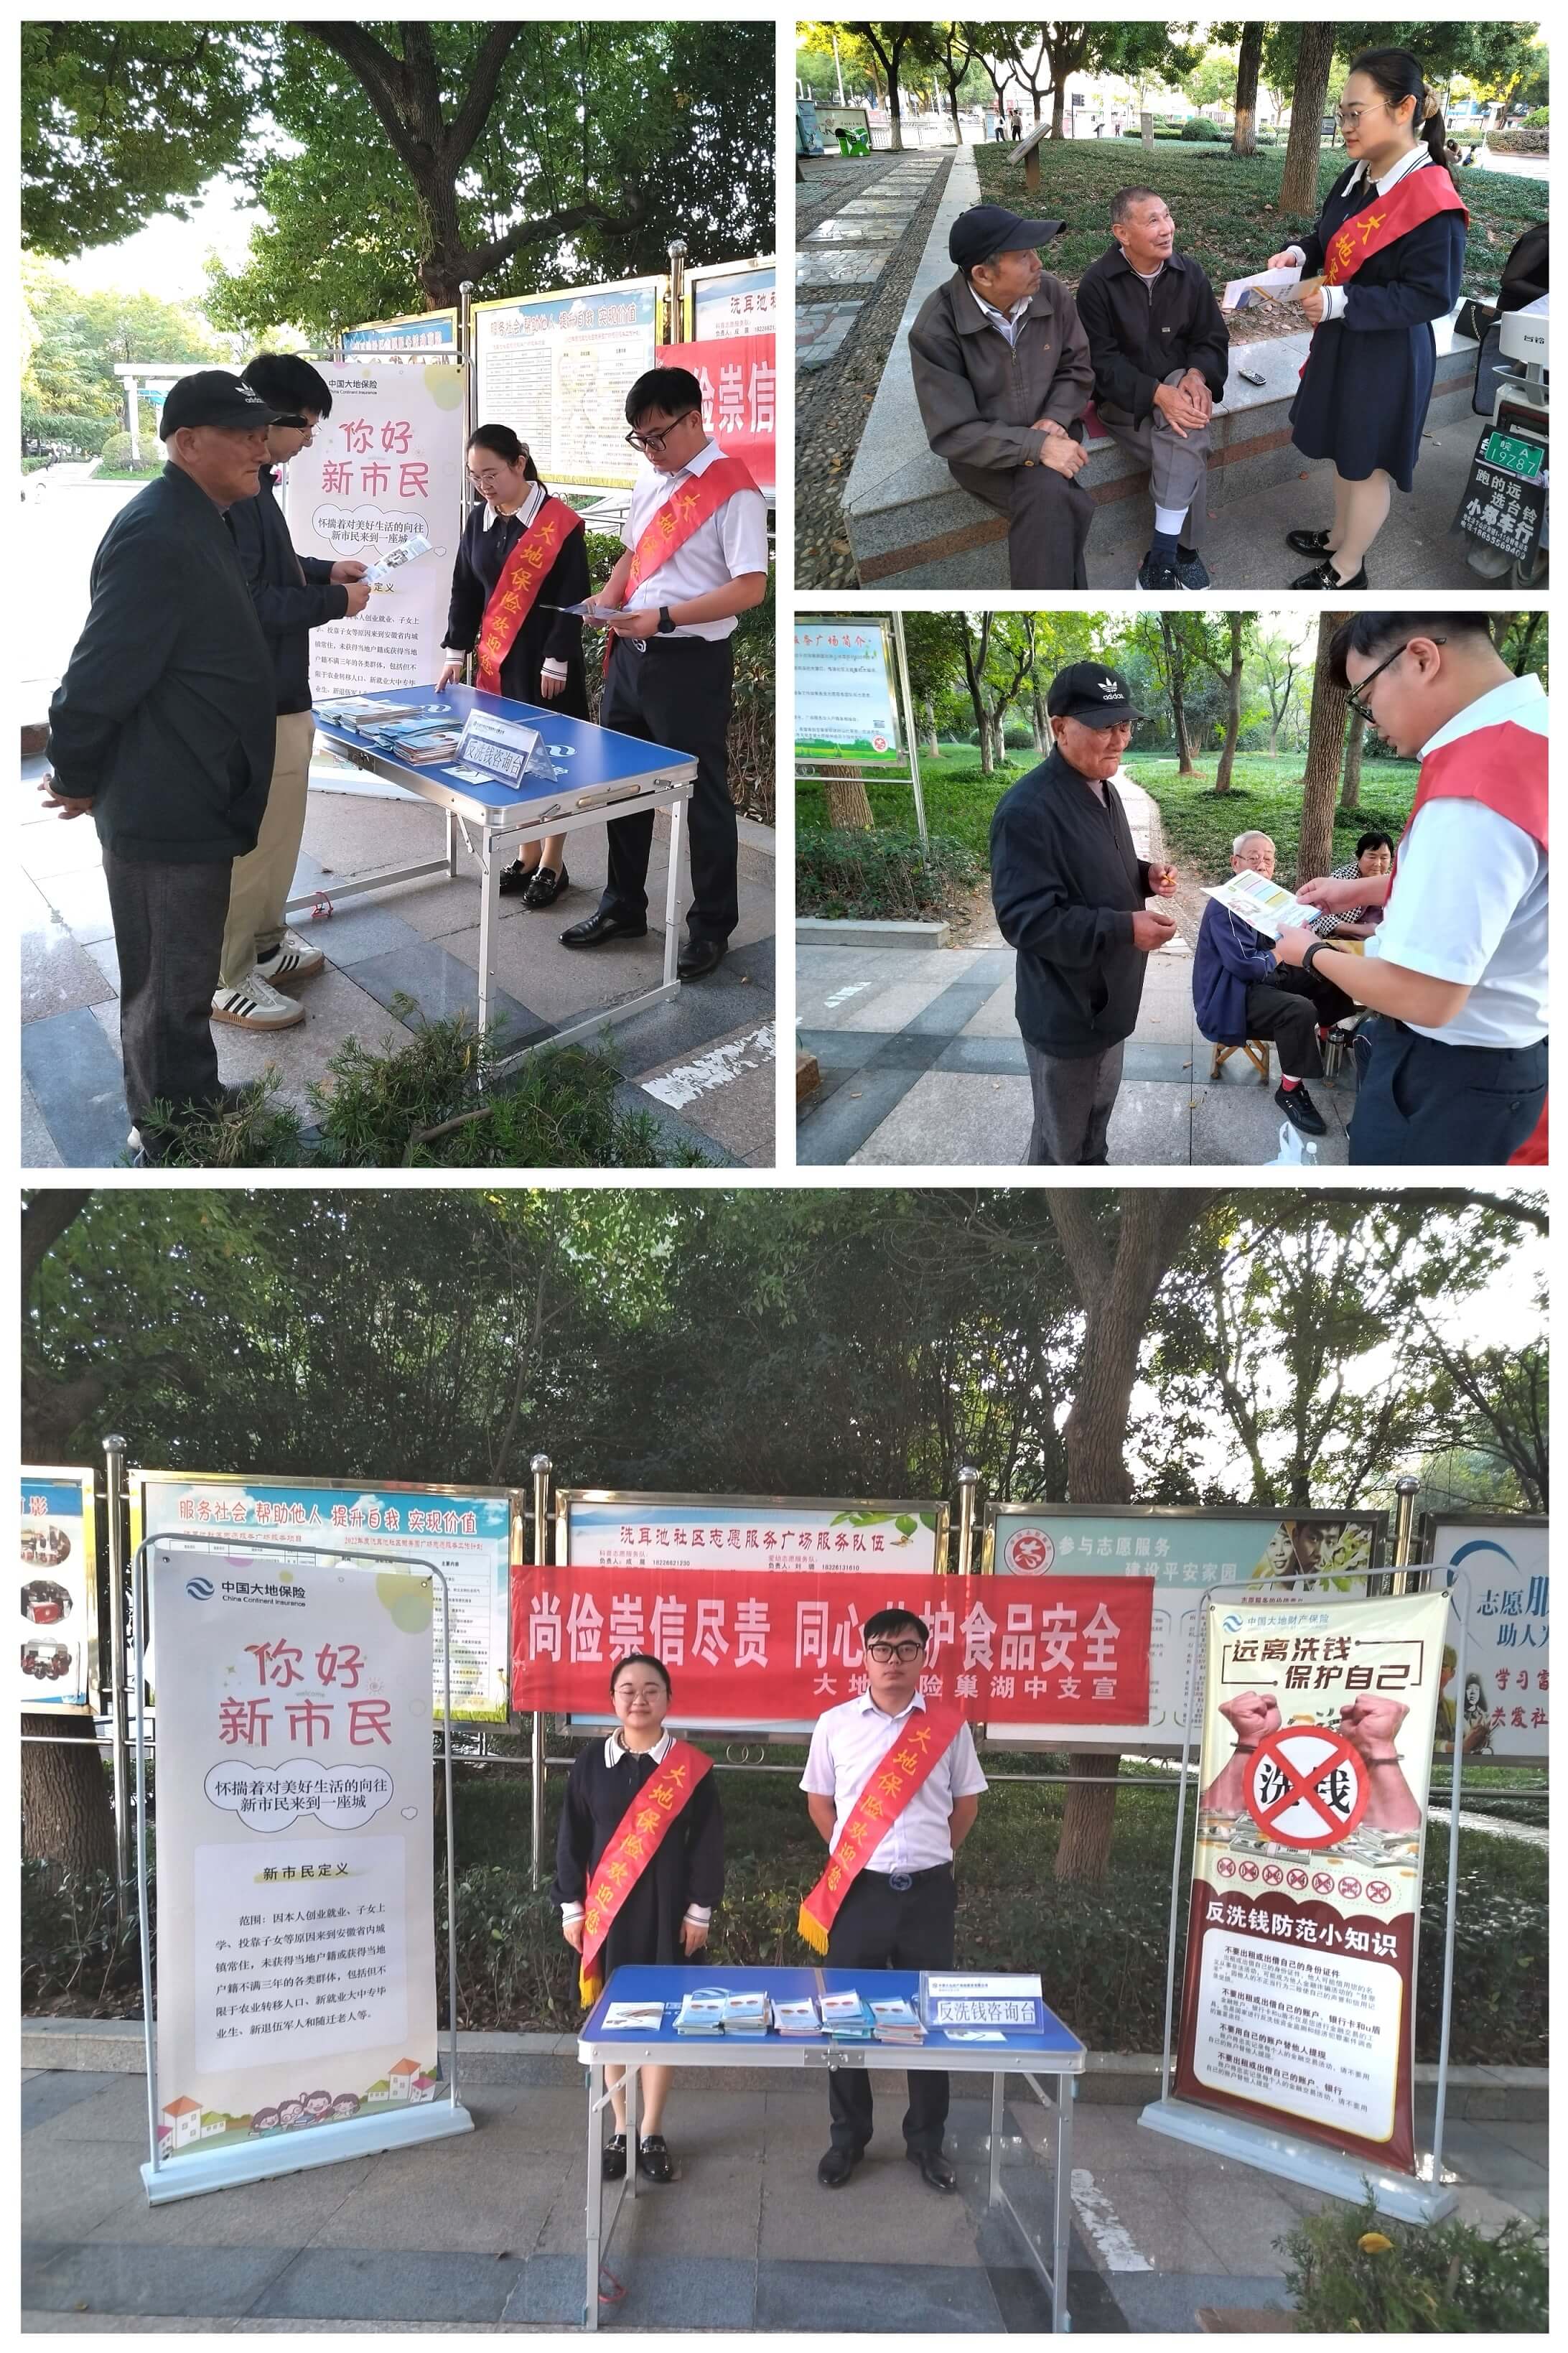 【会员动态】中国大地保险巢湖中支针对新市民群体开展食品安全宣传活动